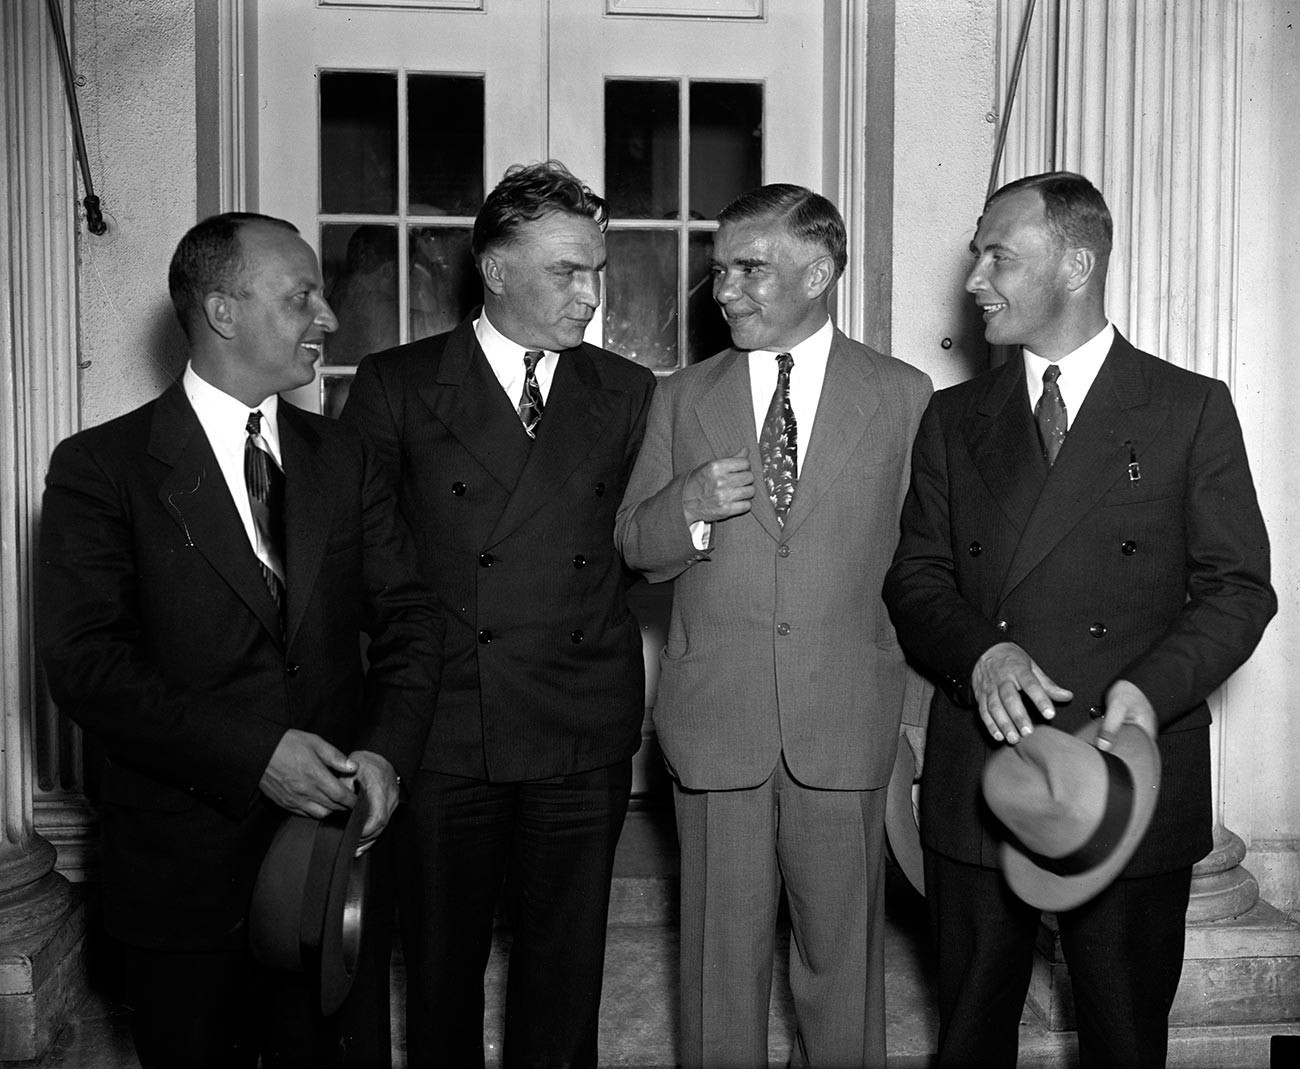 Los pilotos soviéticos después de la reunión con el presidente estadounidense en la Casa Blanca.
